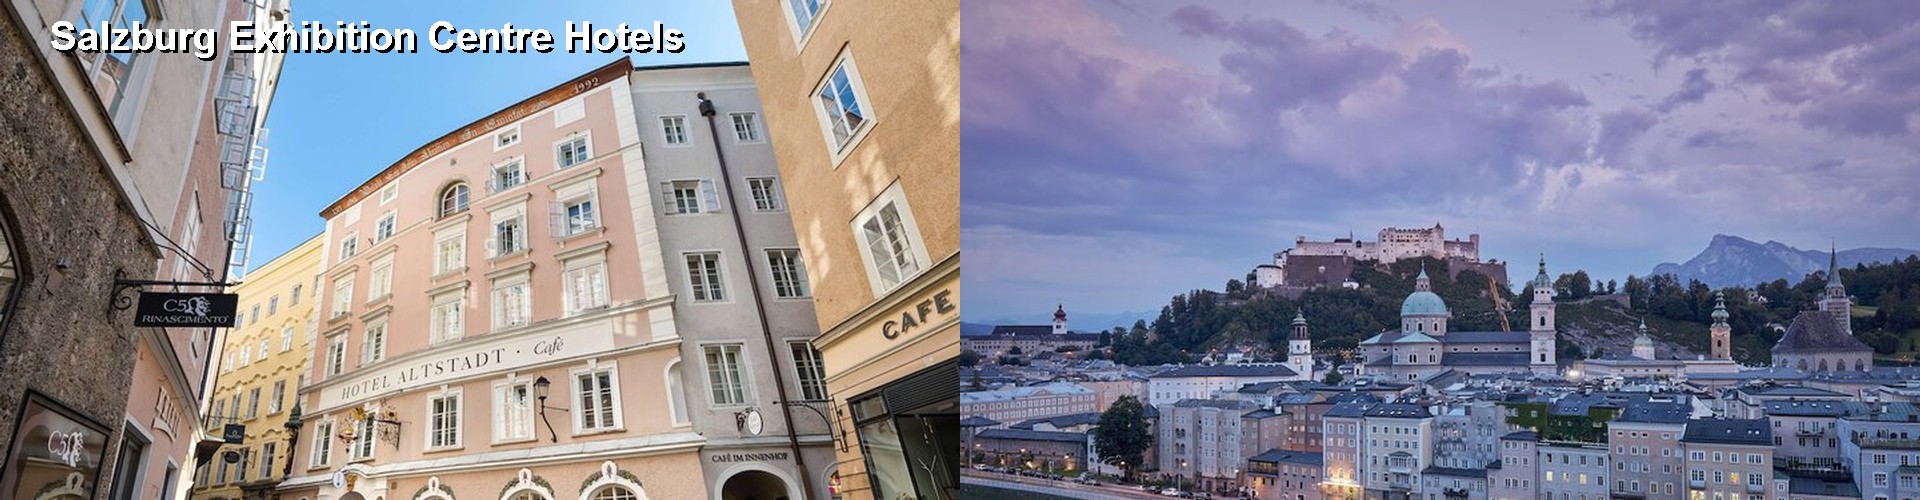 5 Best Hotels near Salzburg Exhibition Centre